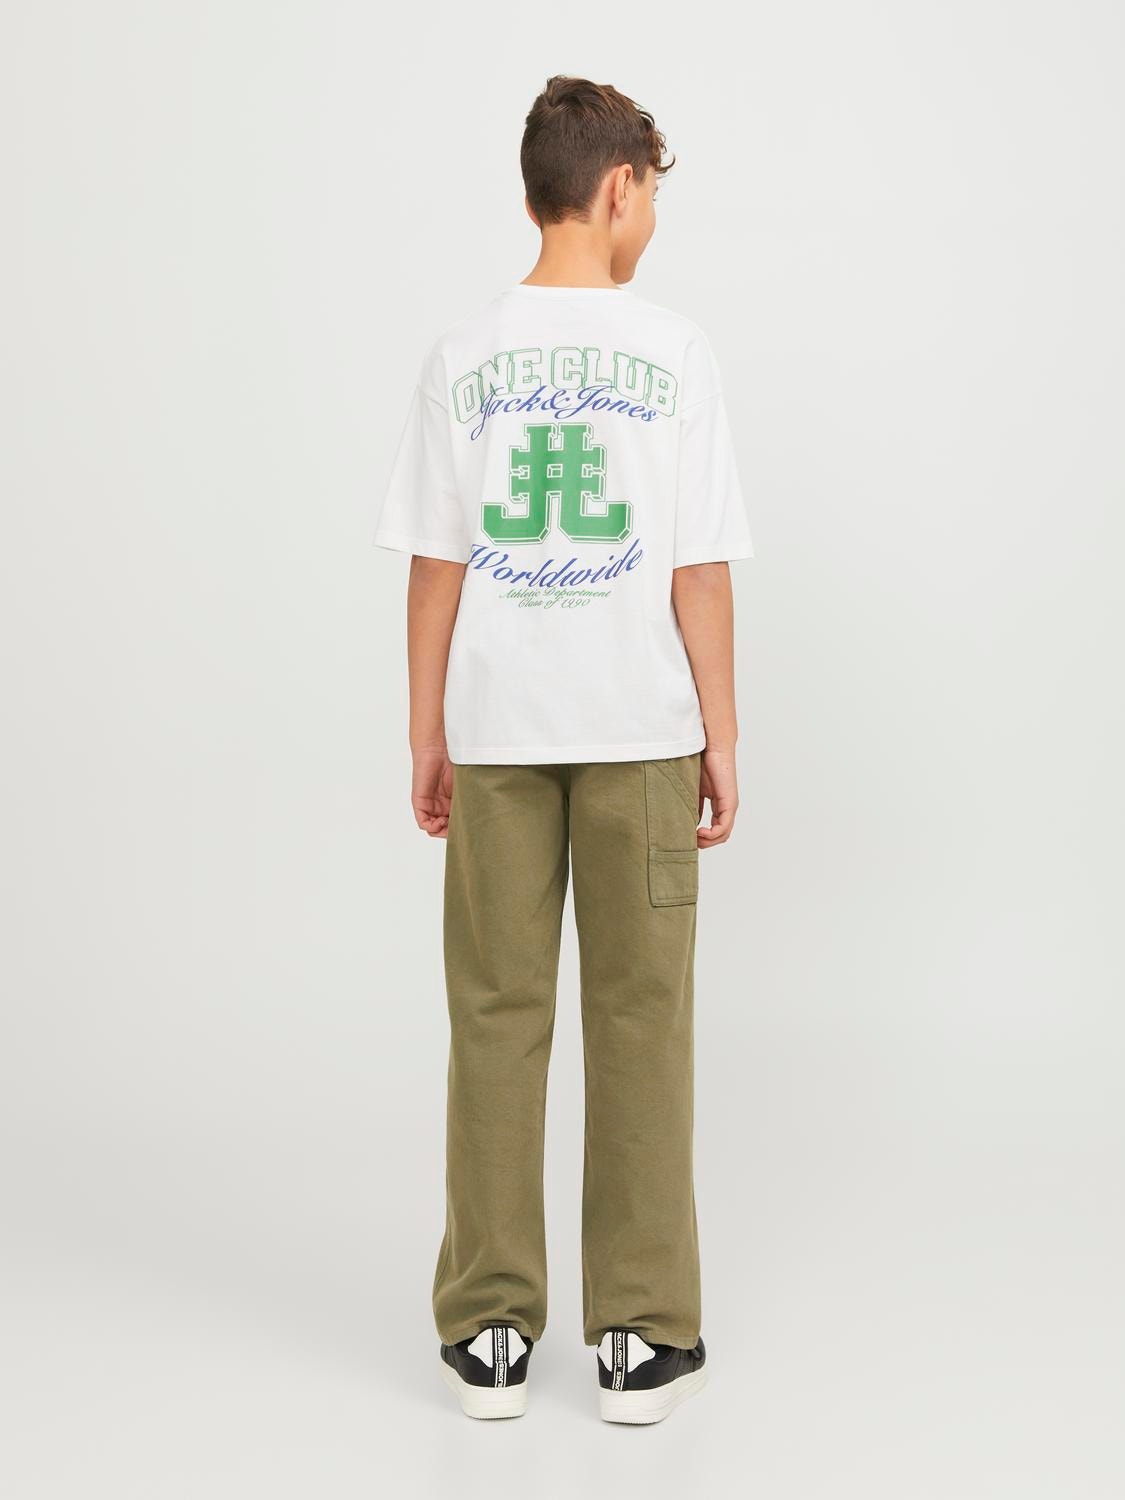 Jack & Jones Printed T-shirt Mini -Cloud Dancer - 12257431